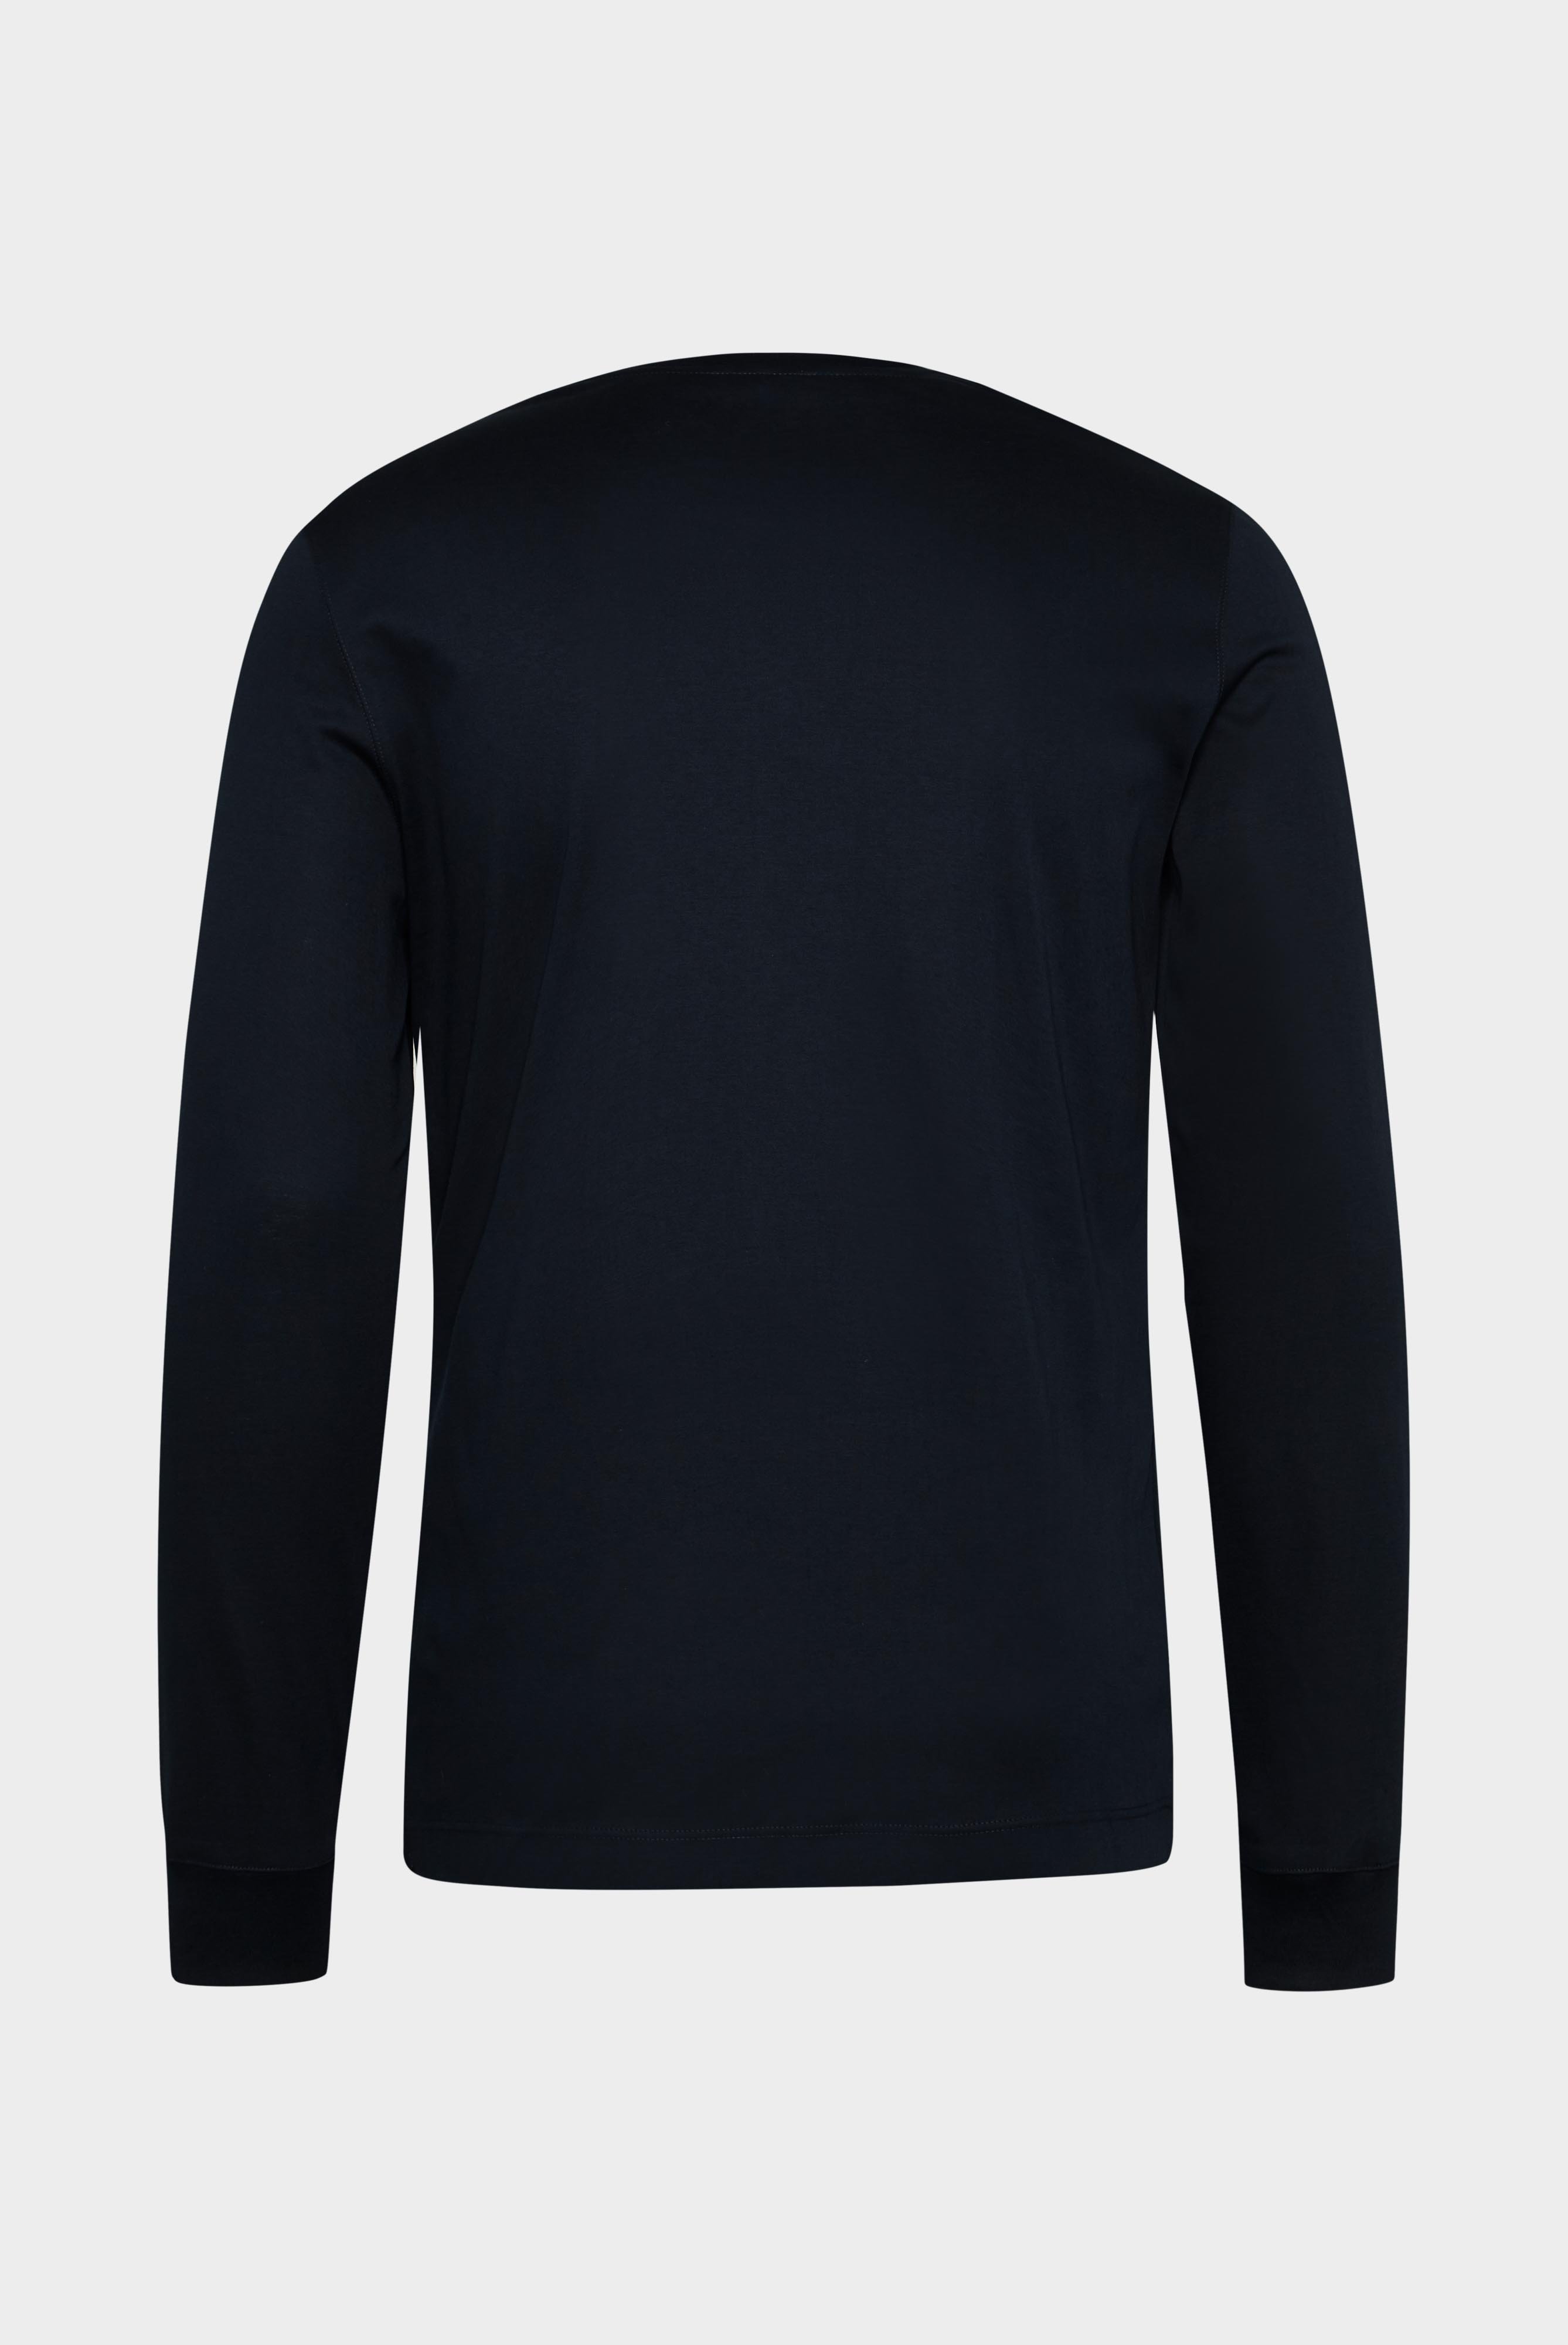 T-Shirts+Langarm Jersey T-Shirt mit Rundhals Slim Fit+20.1718.UX.180031.790.X4L